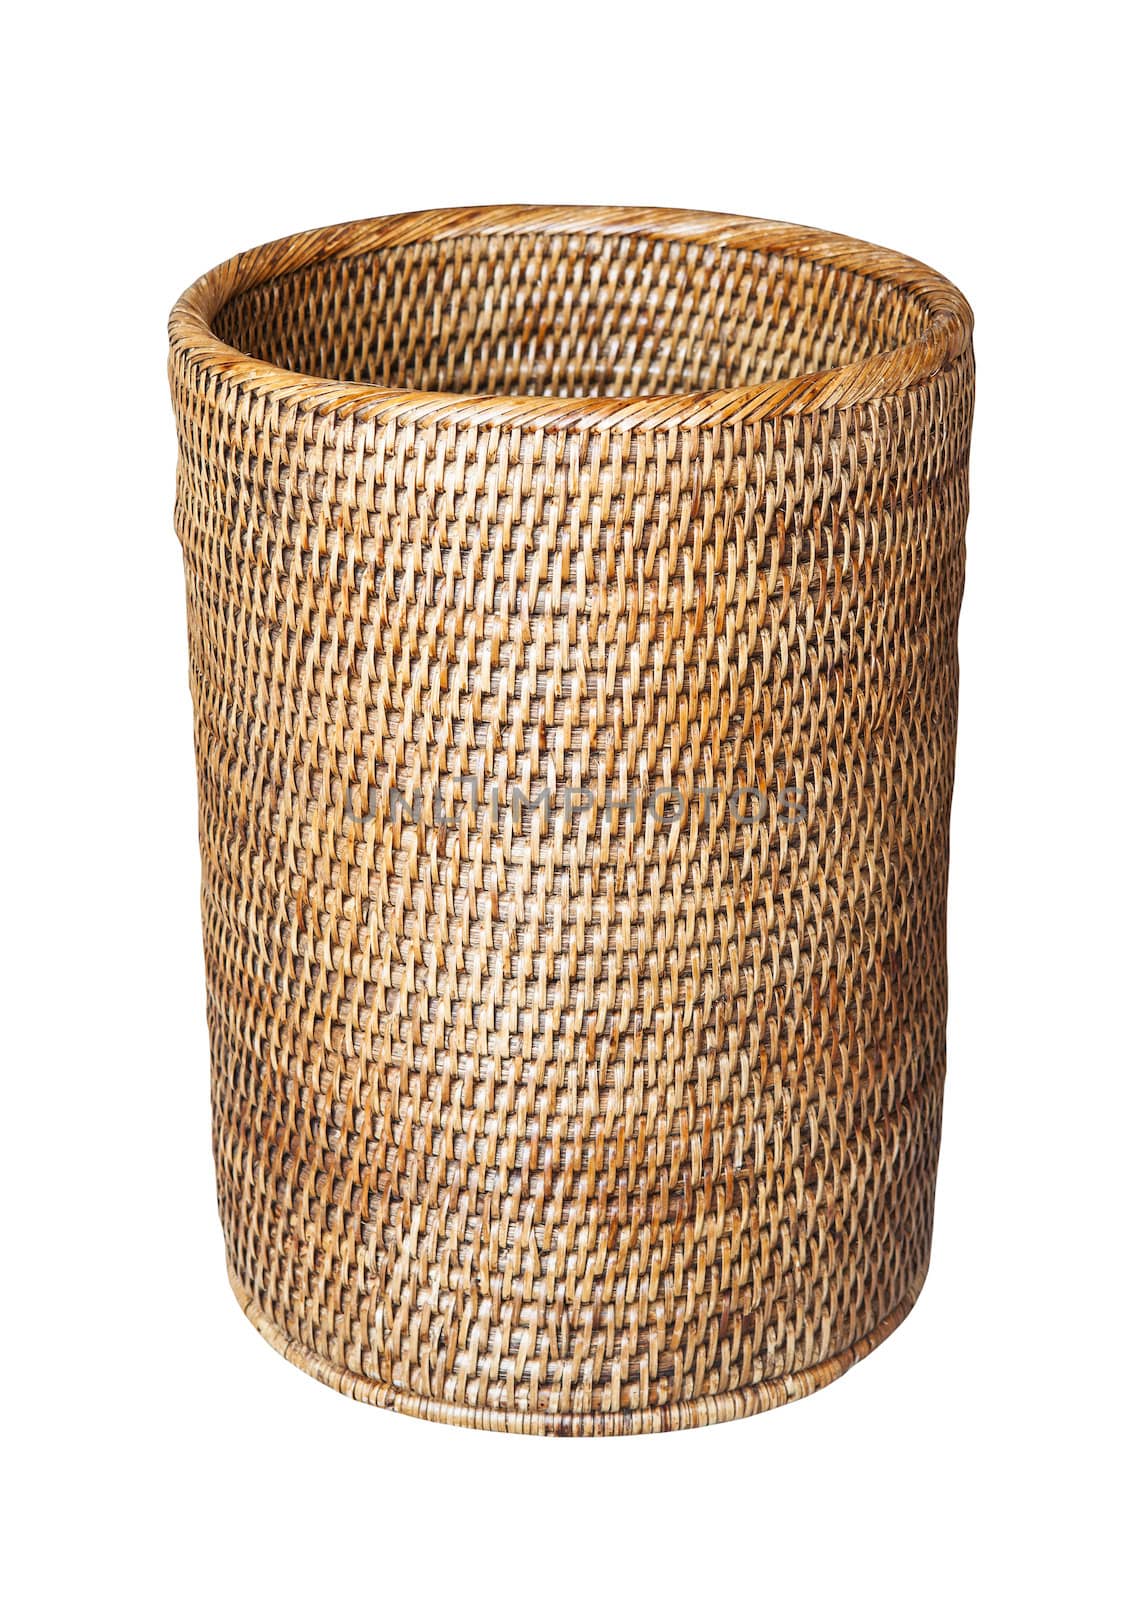 Basket, weave pattern